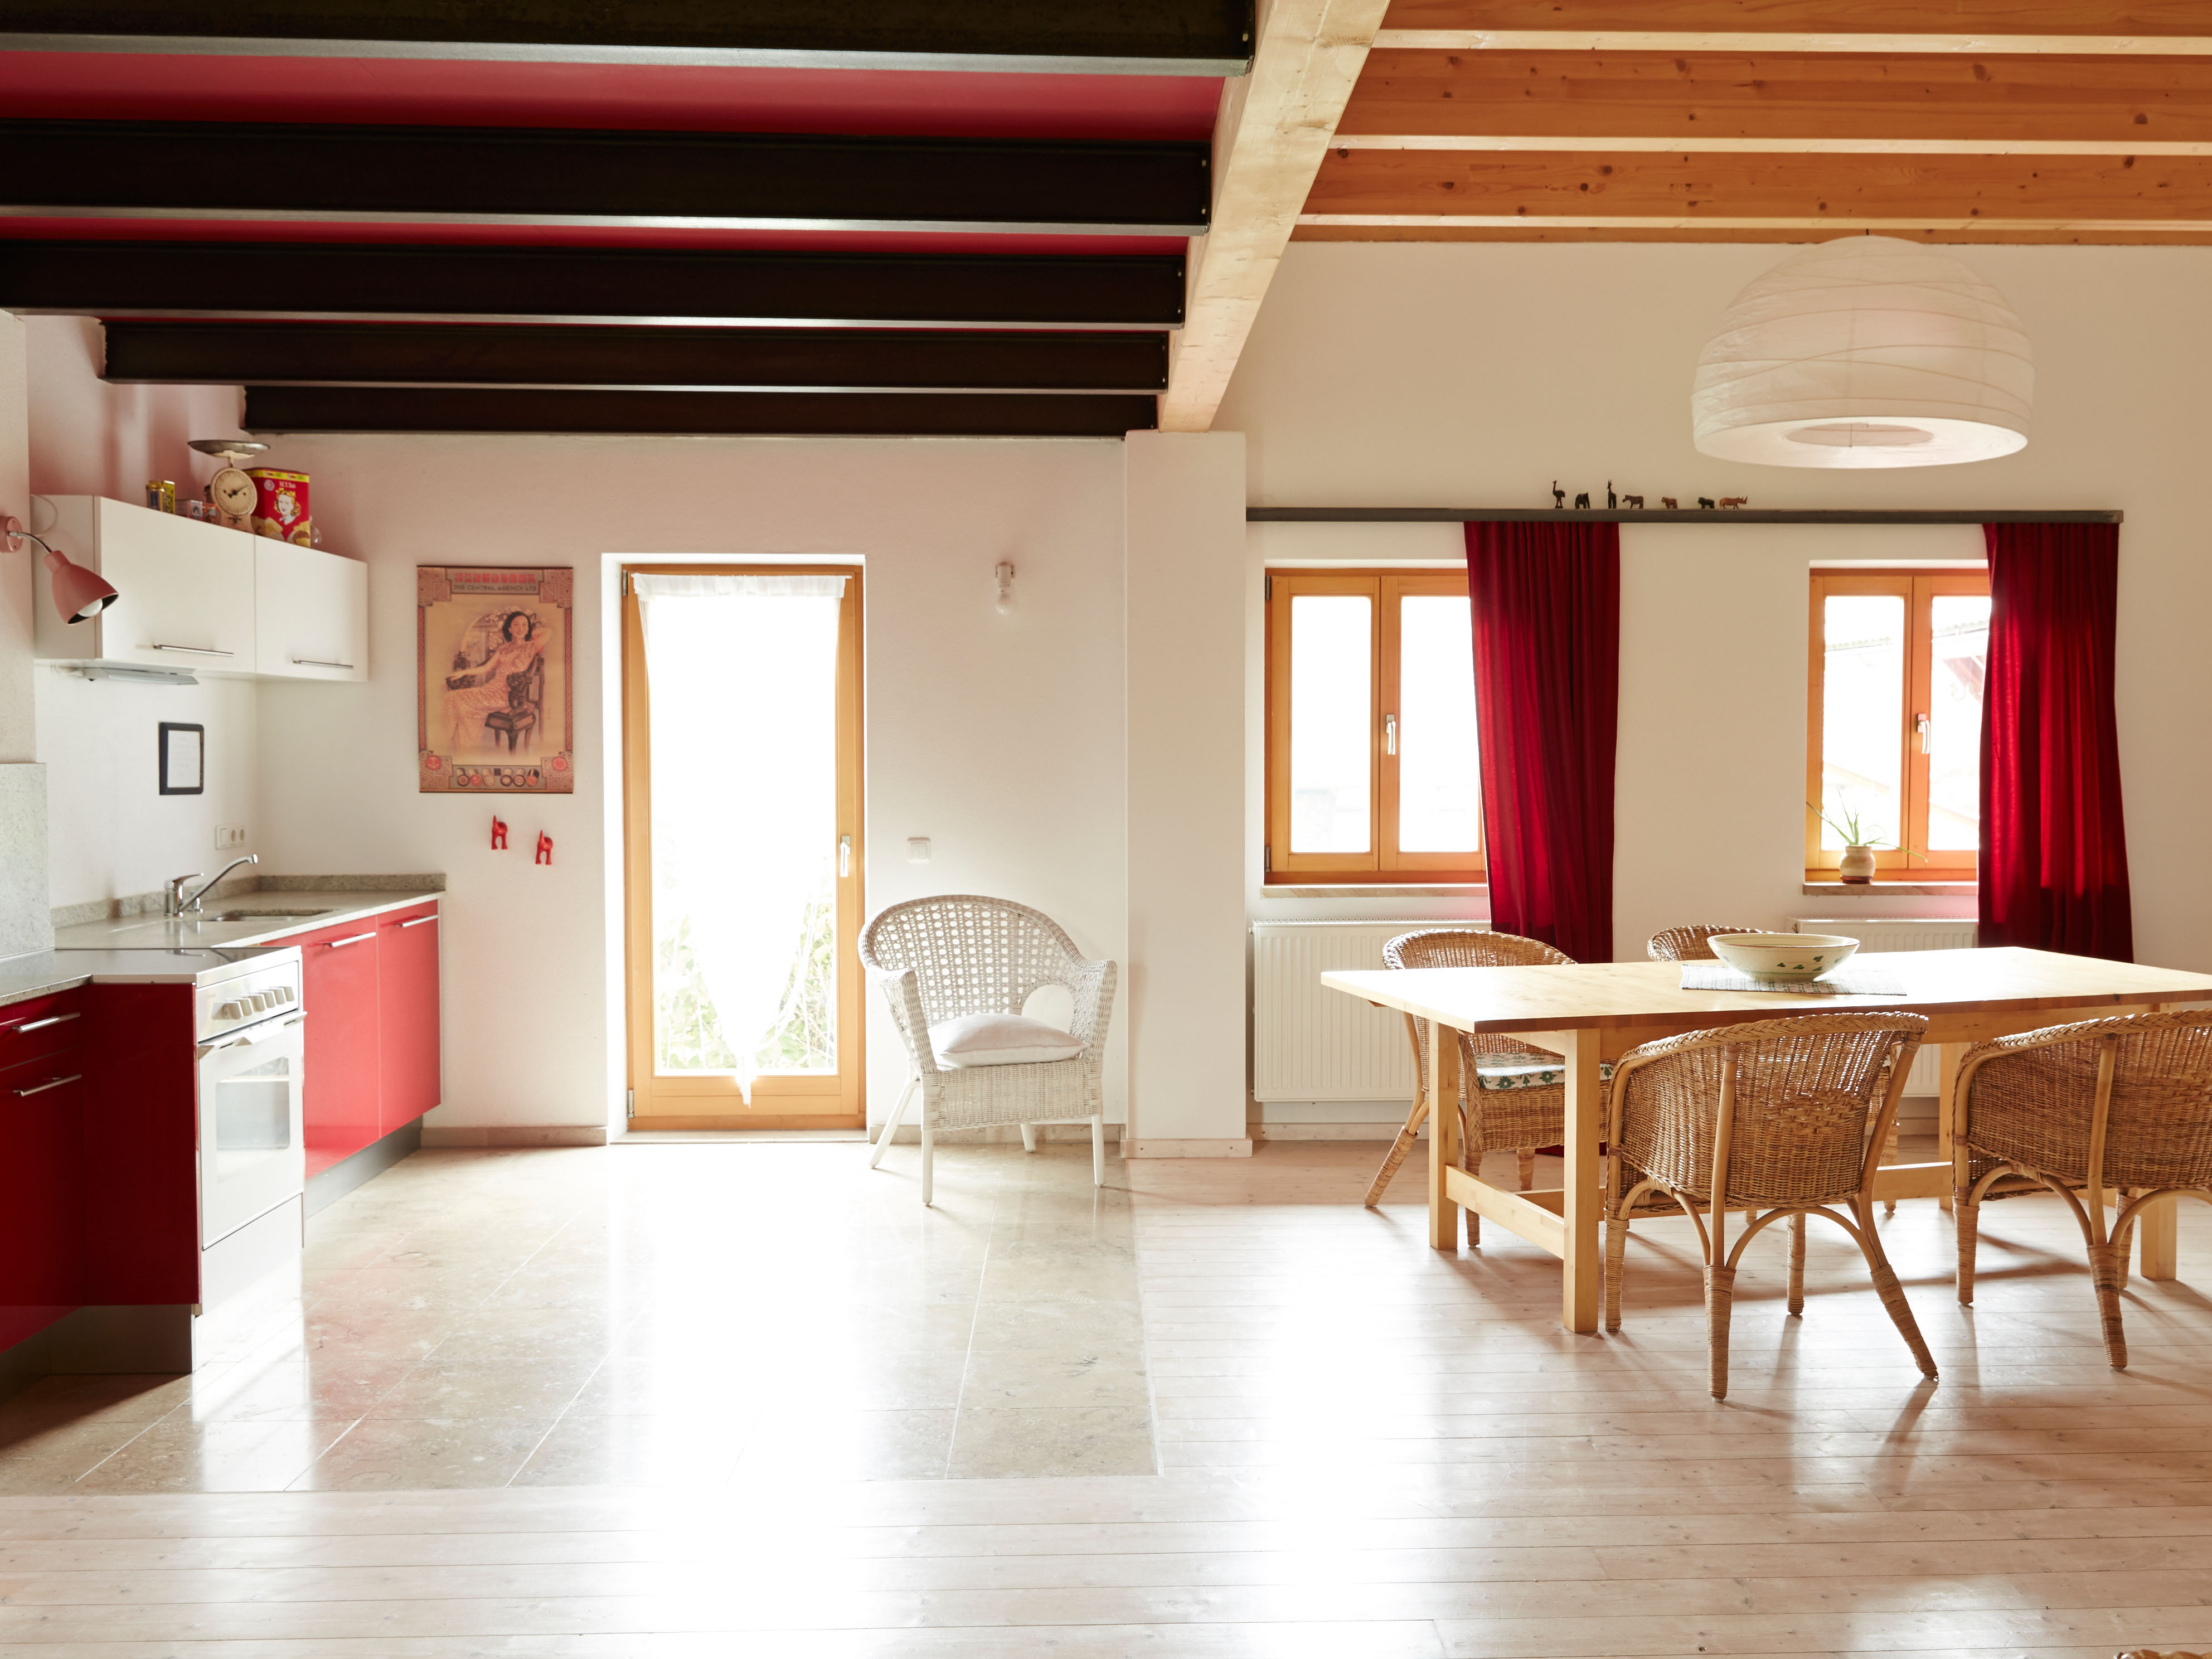 Die 110m2 große Ferienwohnung in Wasserburg am Inn besitzt eine Küche, Holzofen sowie einen großen Esstisch, welcher eine gemütliche Zusammenkunft sorgt.